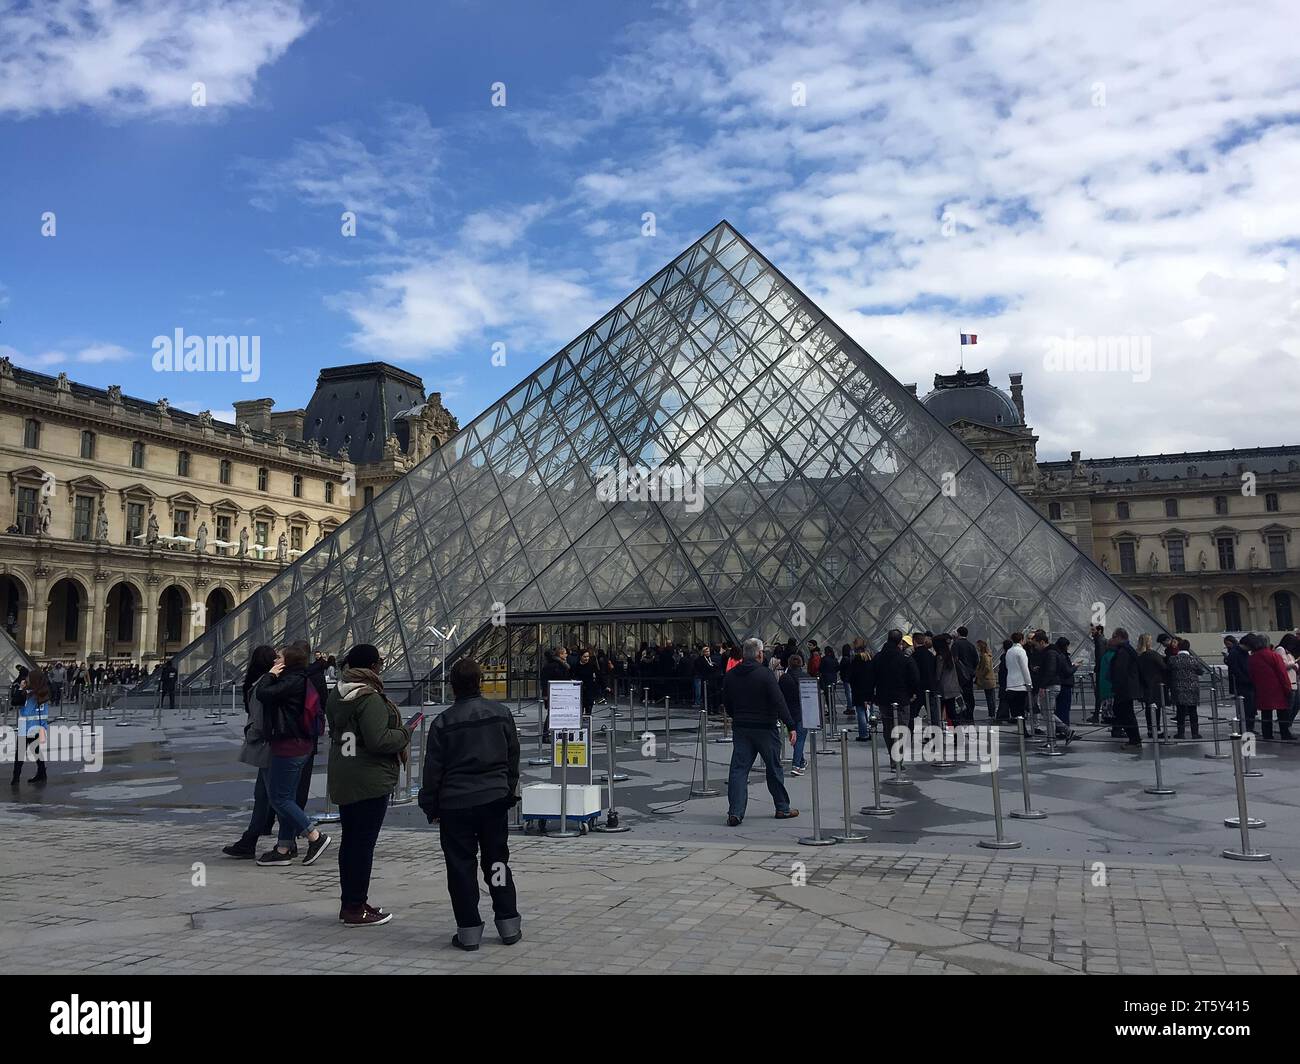 Paris - April 17, 2016: glass Pyramid, Le Louvre Museum, Paris, France Stock Photo